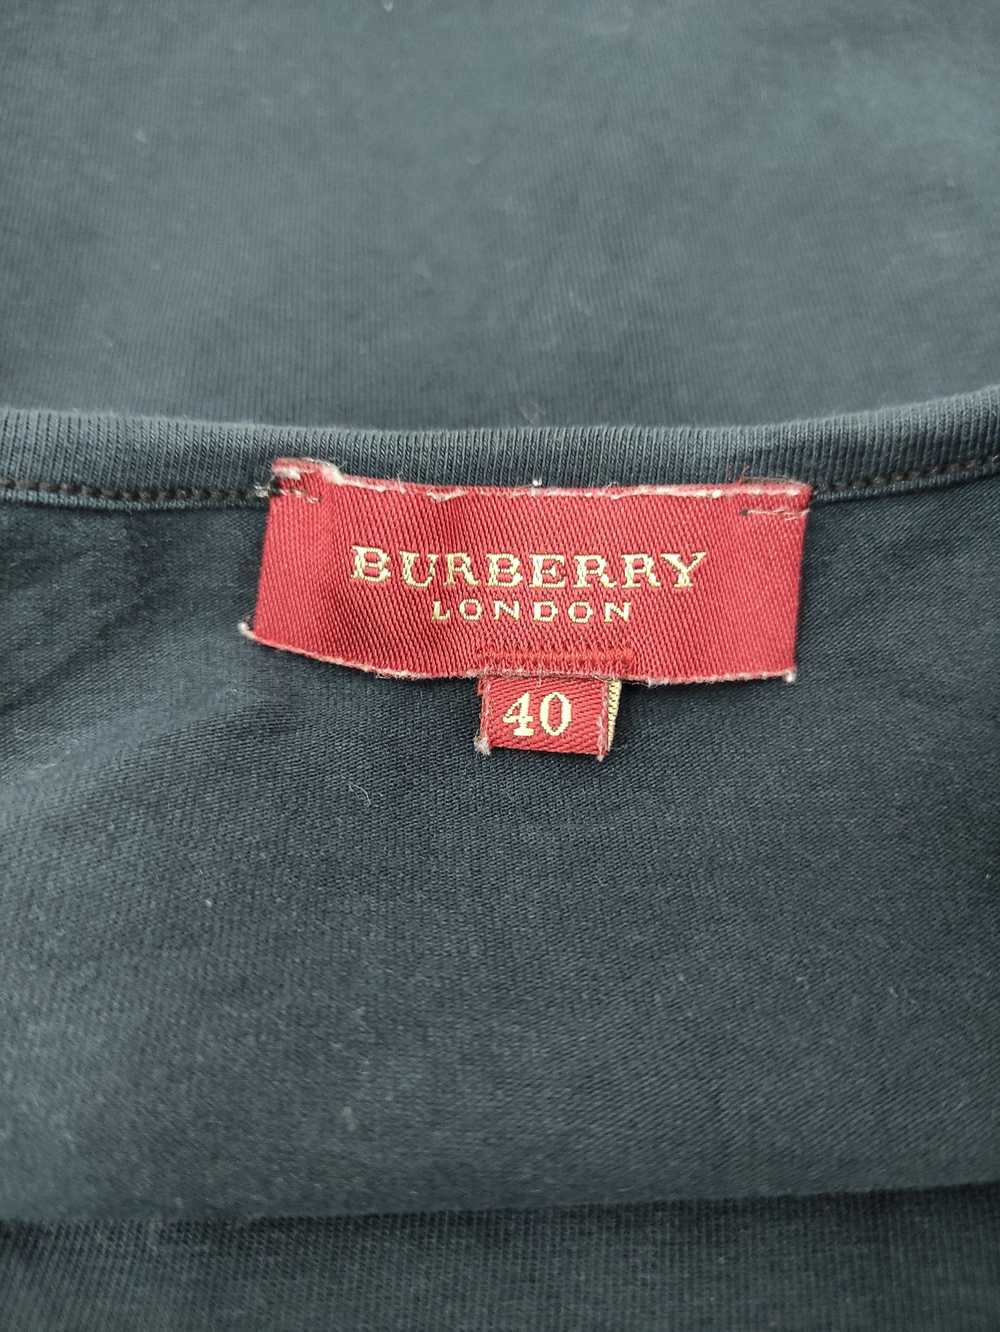 Burberry × Luxury × Vintage VINTAGE BURBERRY LOND… - image 6